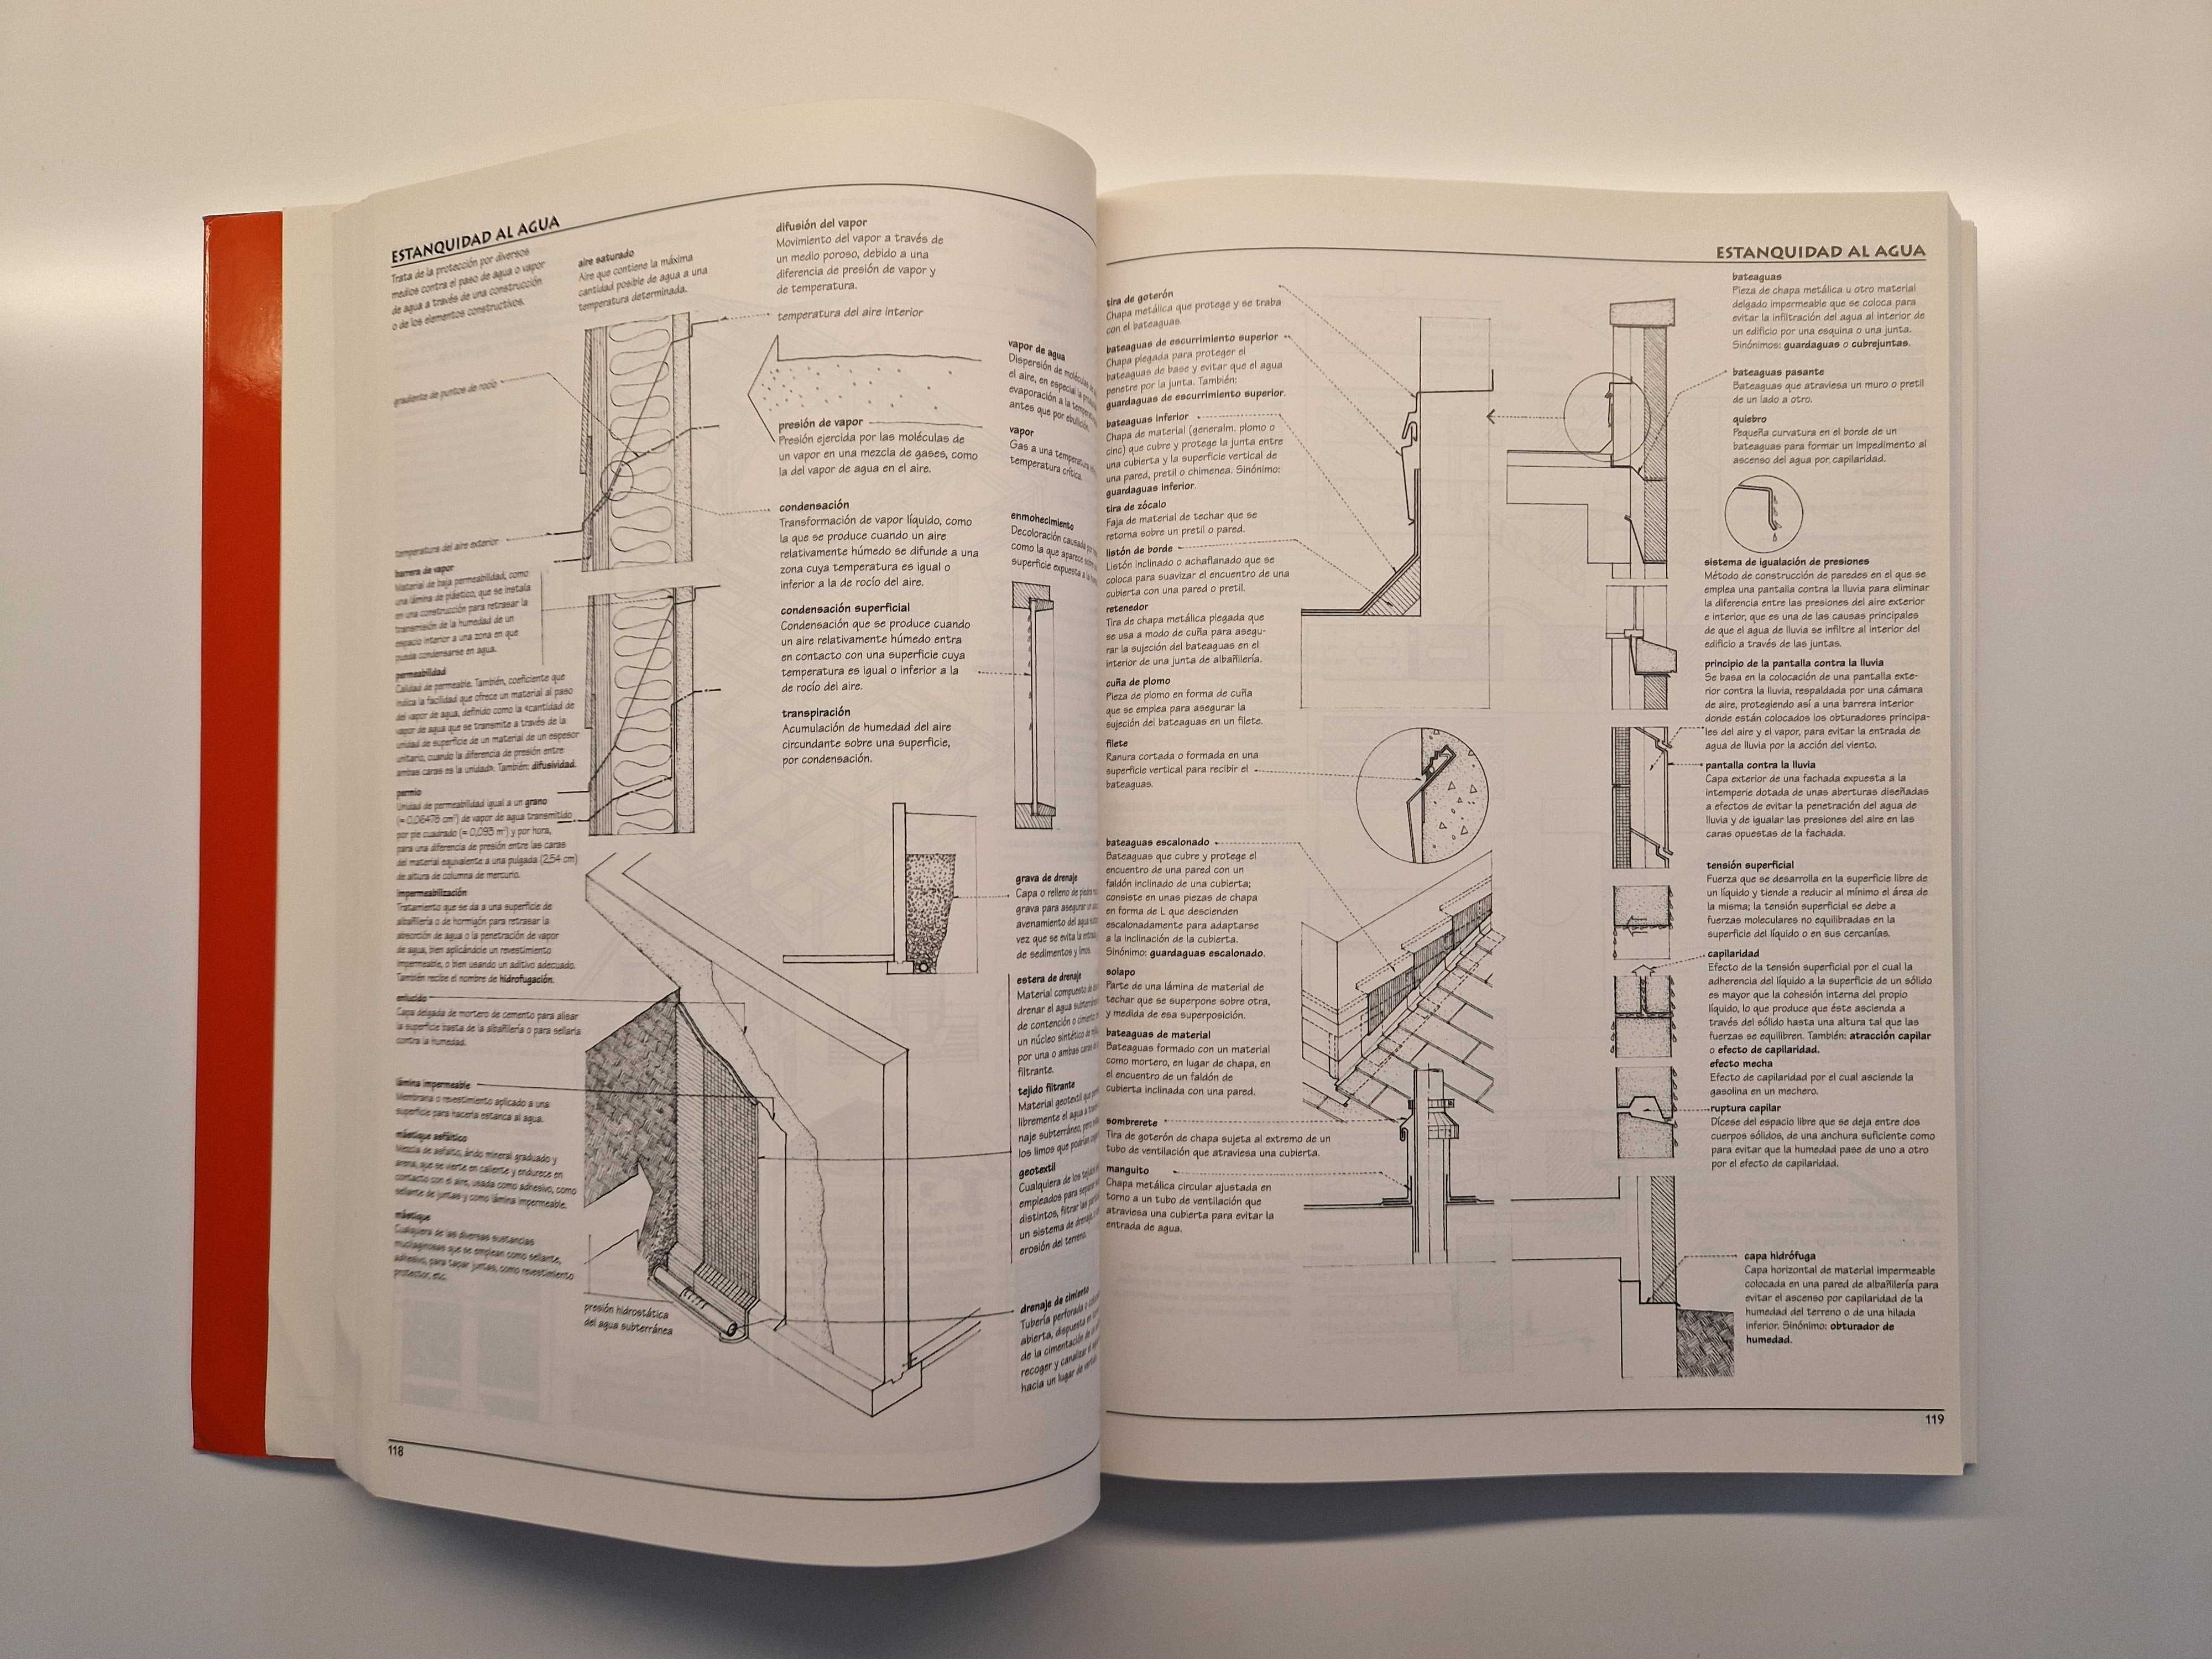 Dicionário Visual de Arquitetura Edição Espanhola Gustavo Gili